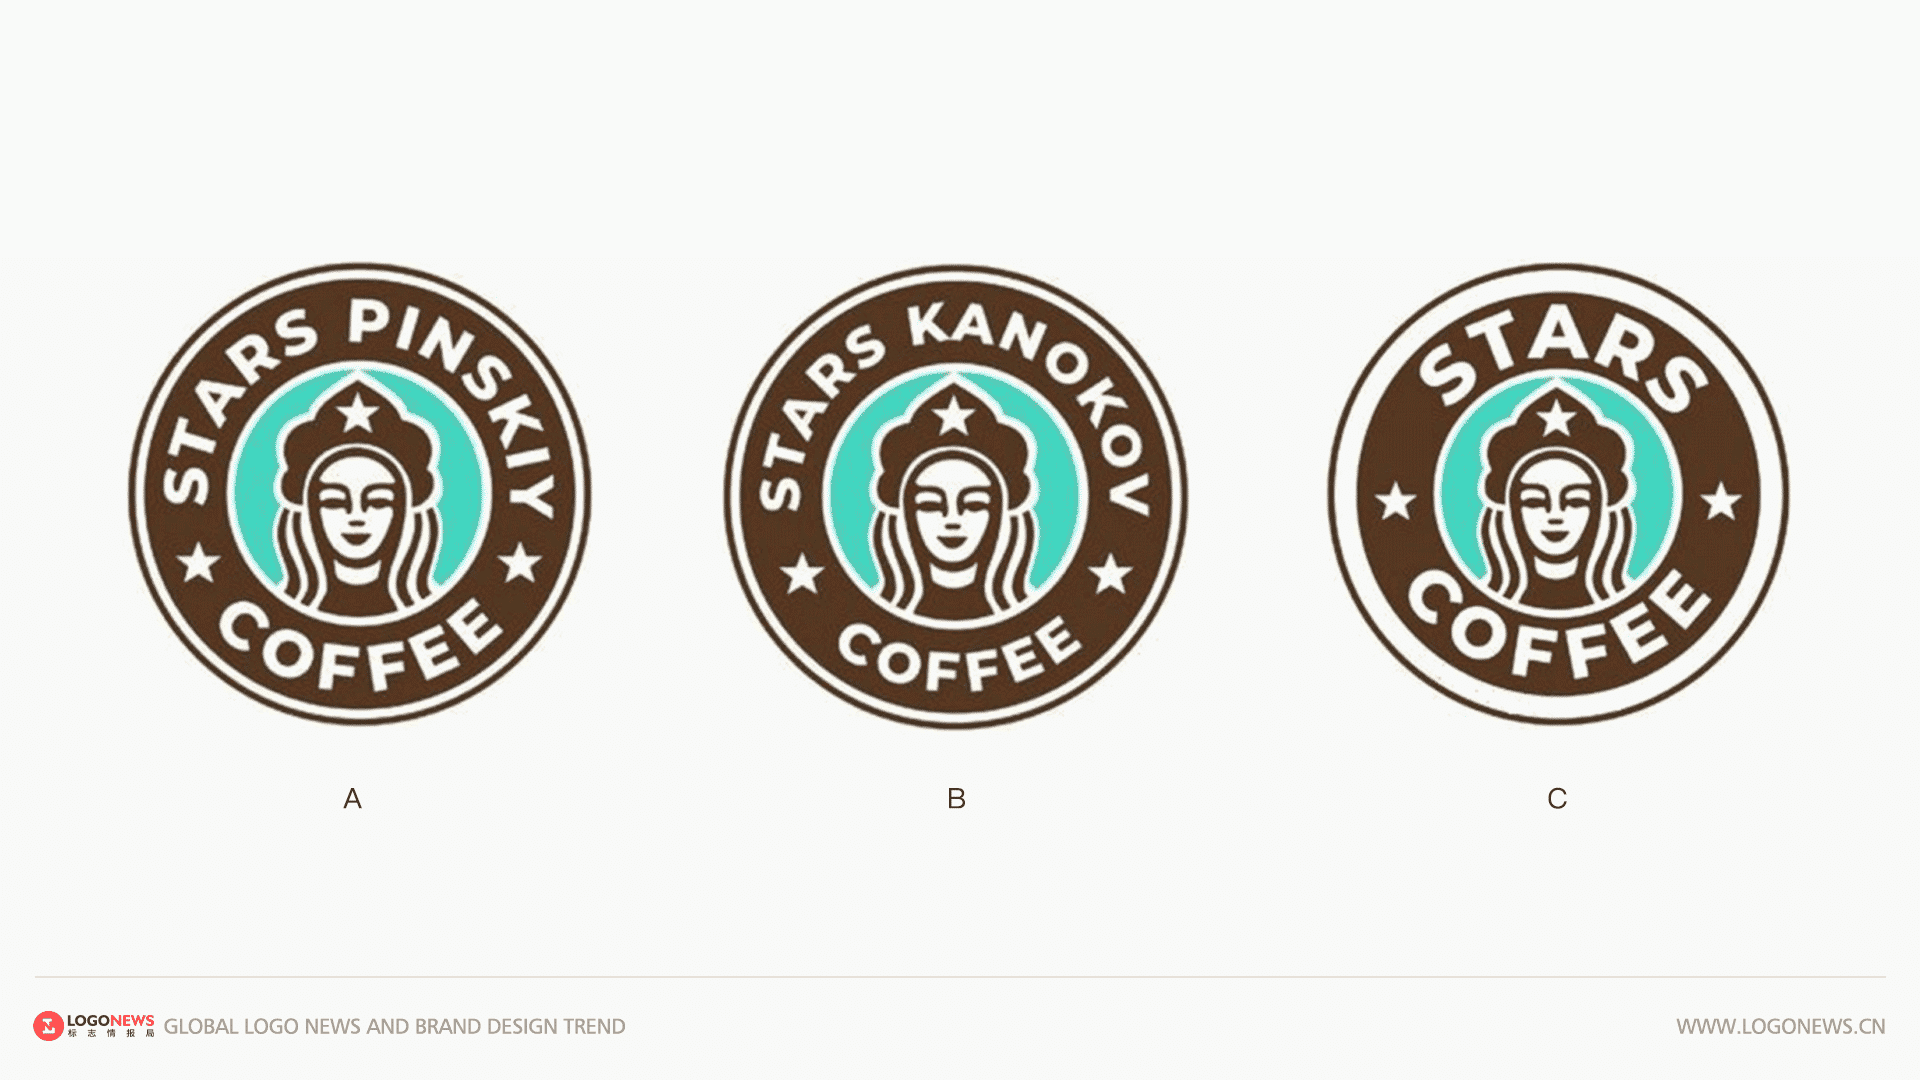 俄羅斯星巴克更名為「Stars Coffee」並啟用新LOGO 3